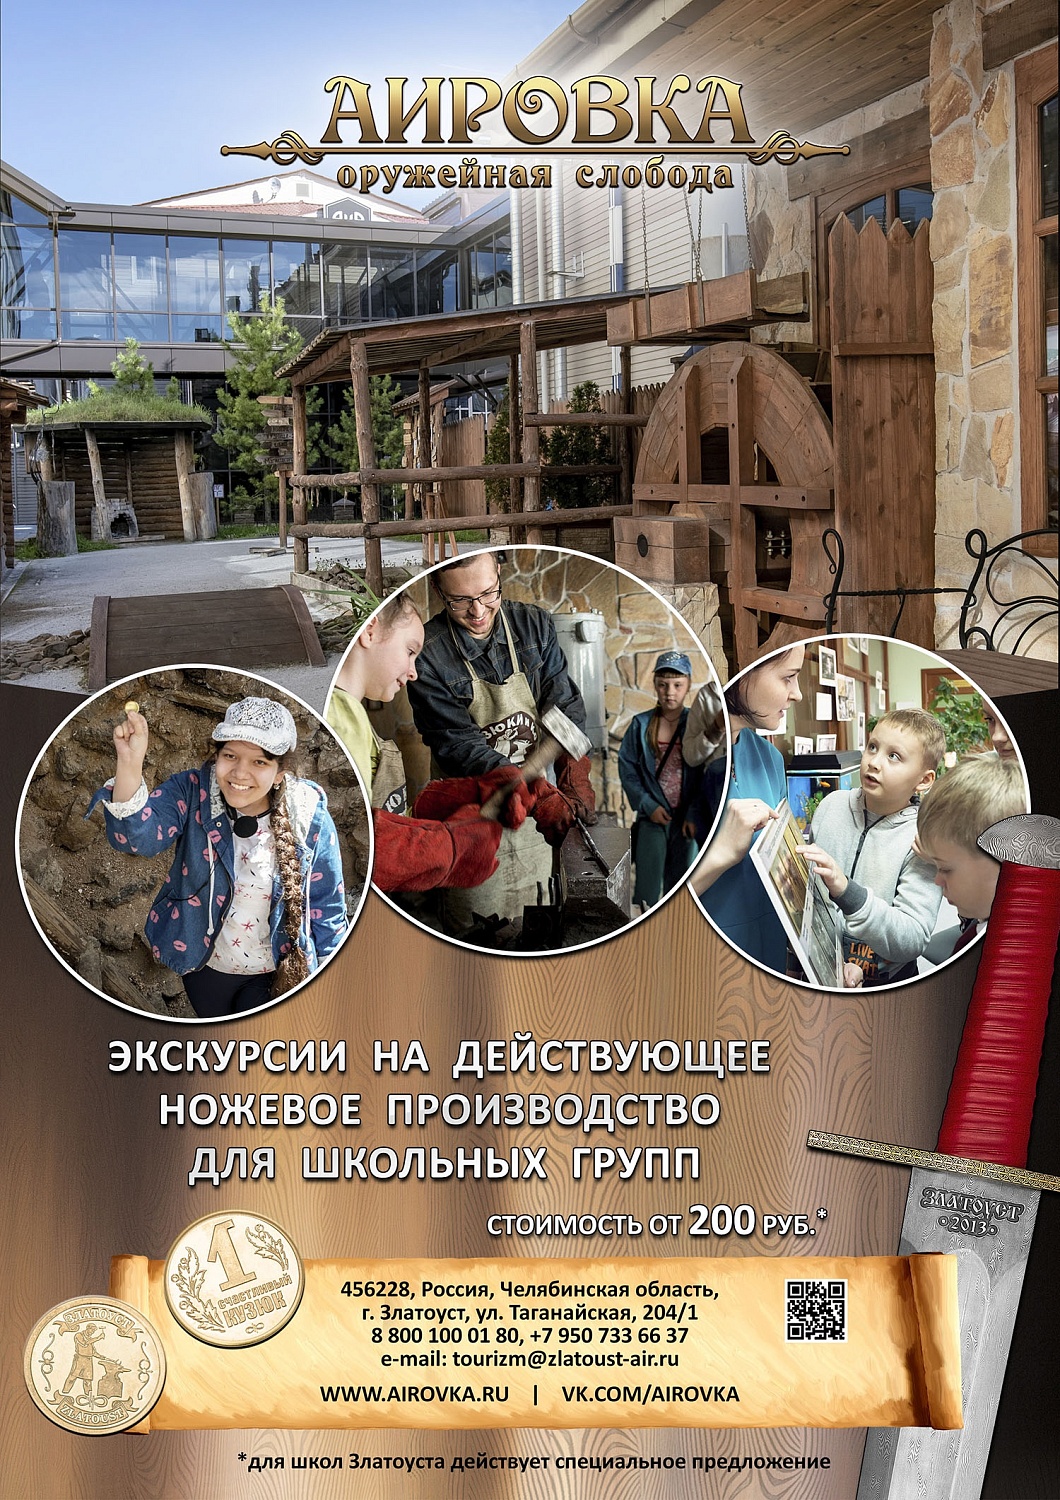 Приглашаем школьные группы на экскурсии в "АиРовку"!